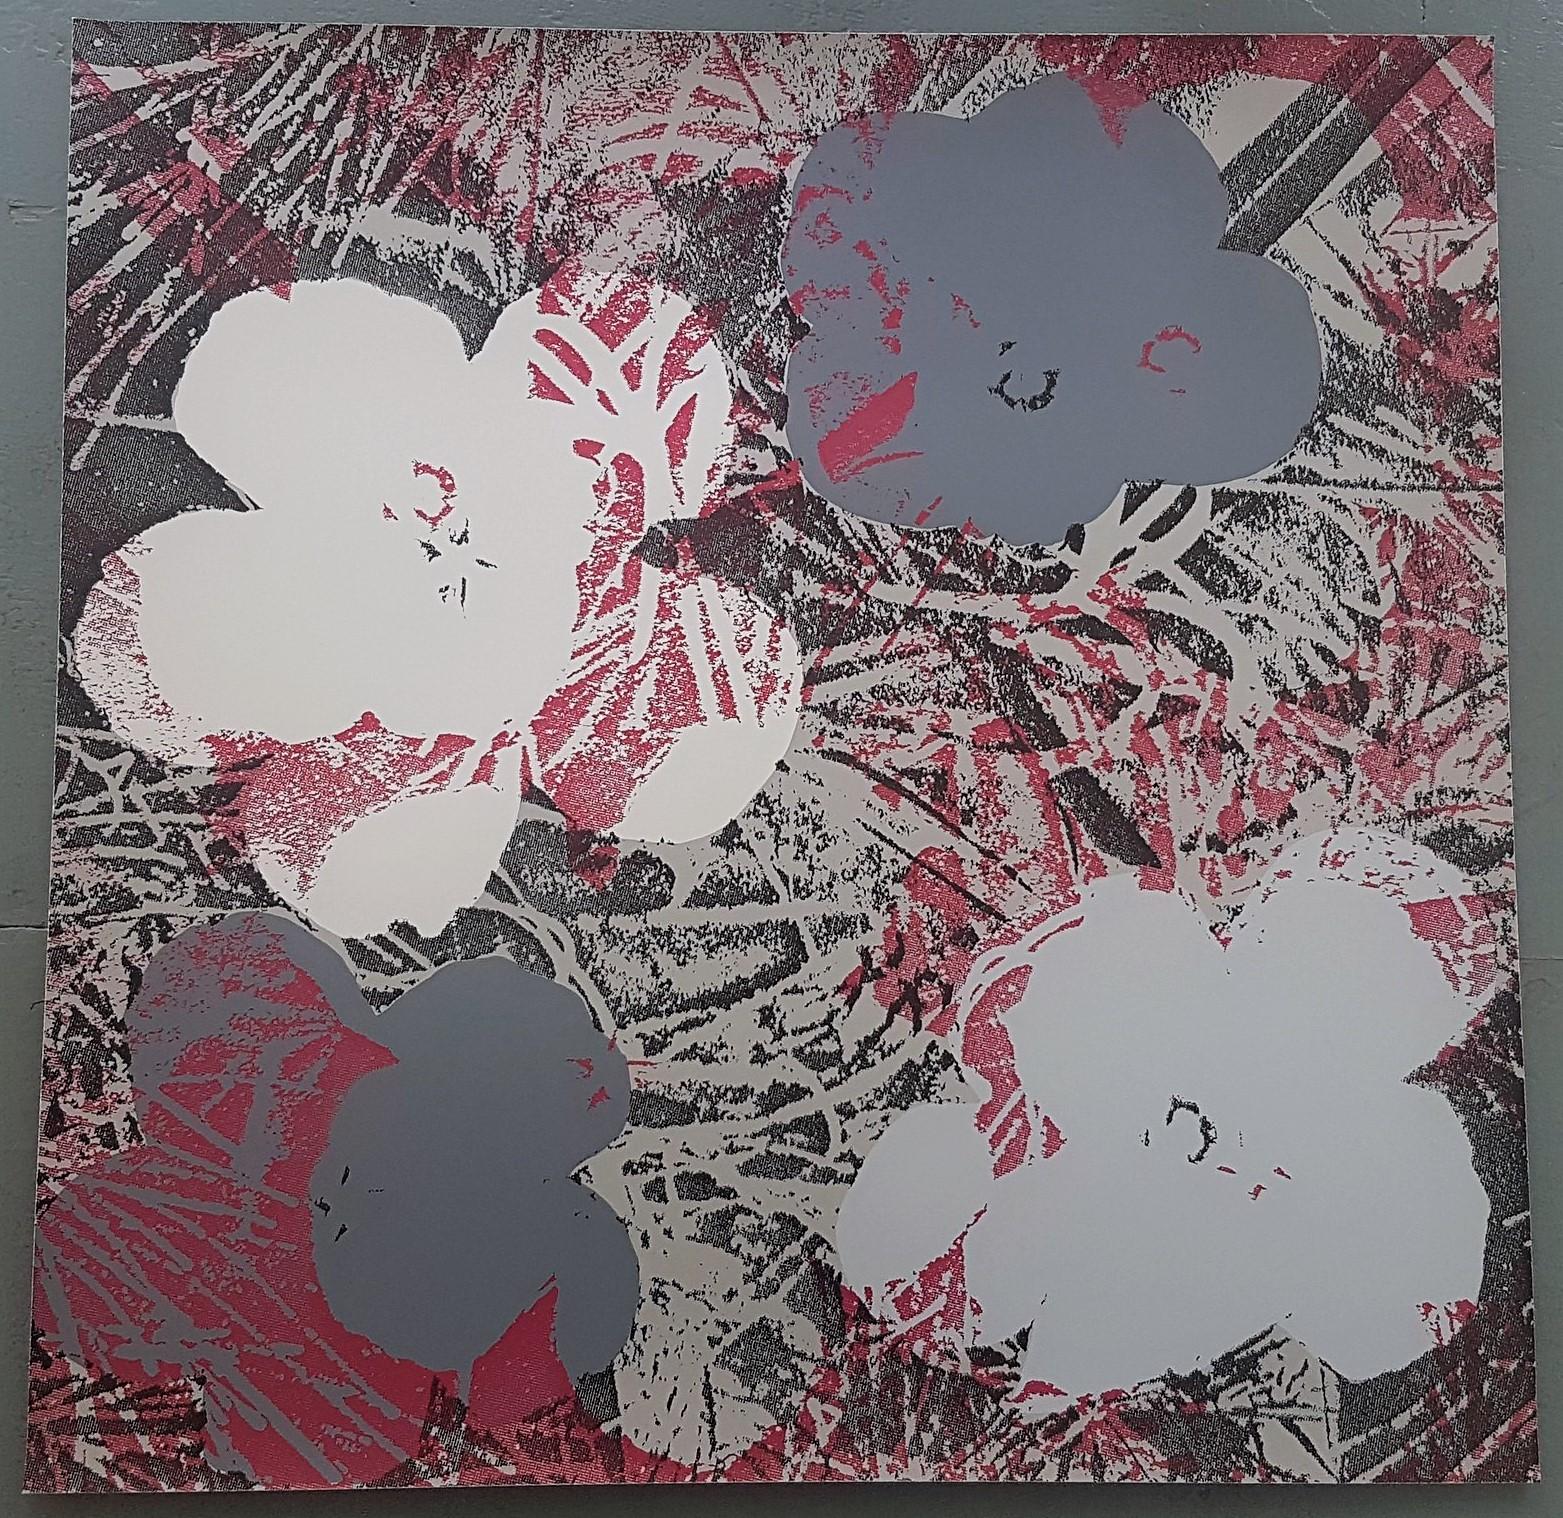 Fleurs (tons gris et rouge foncé - Pop Art) (50% DE RÉDUCTION SUR LE PRIX DE LISTE, DURÉE LIMITÉE) - Print de Jurgen Kuhl 